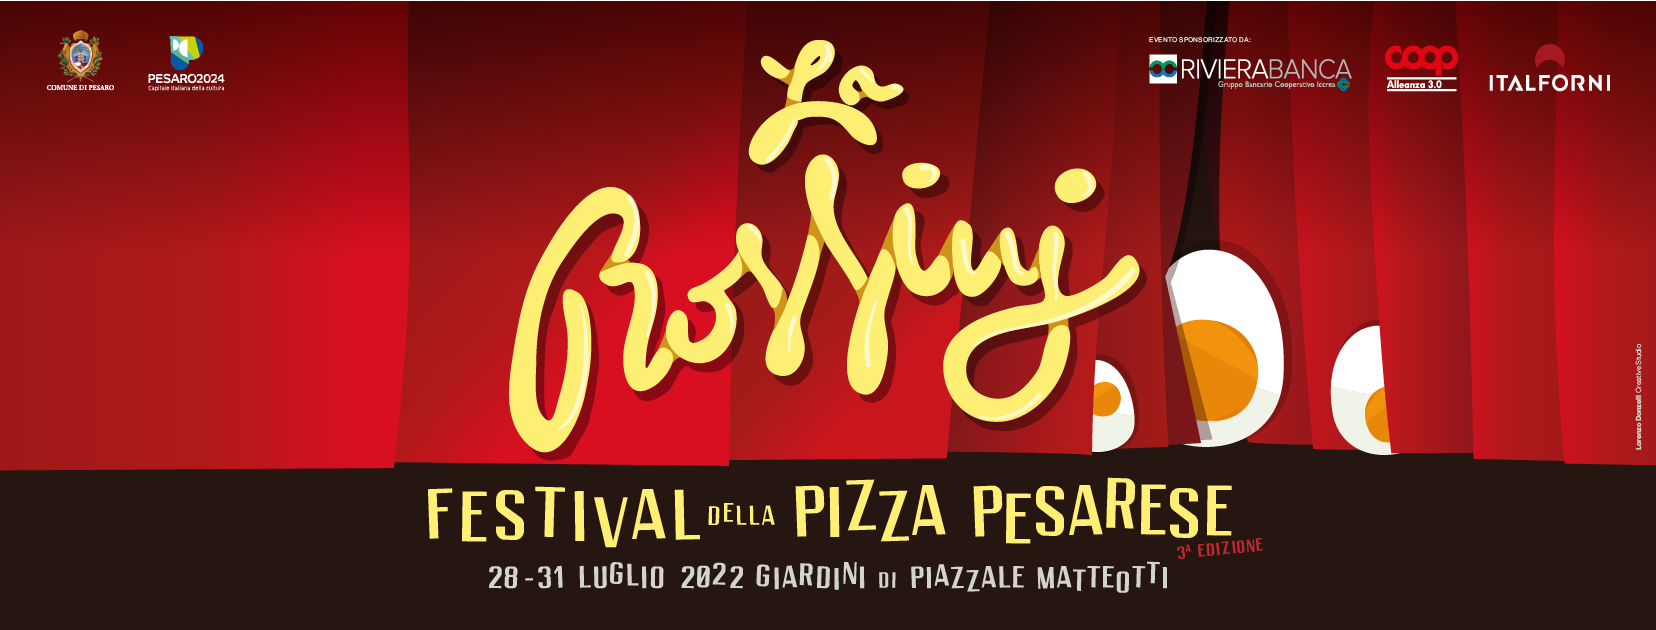 Copertina Festival della Pizza Pesarese edizione 2022